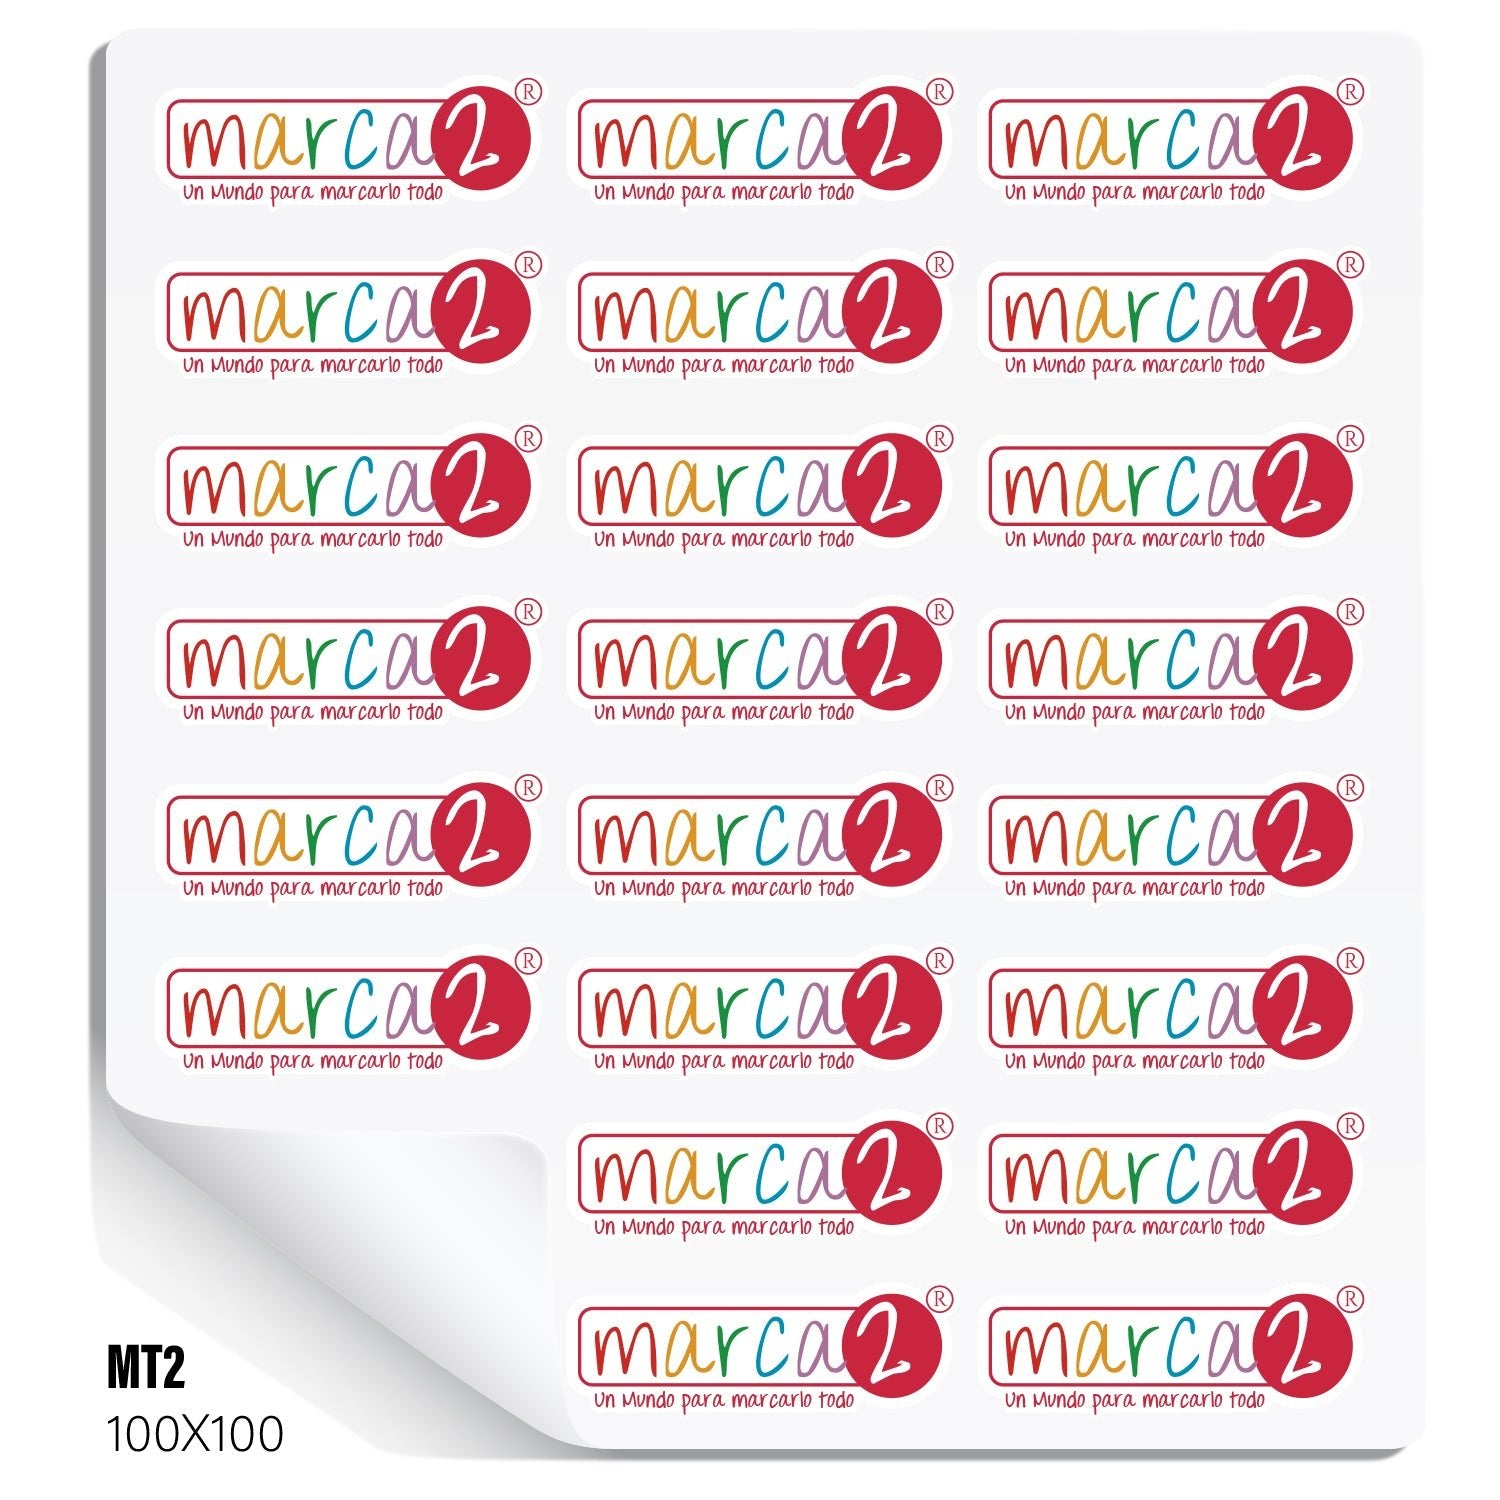 Stickers adhesivos por Mt2 troquelados - Marca2